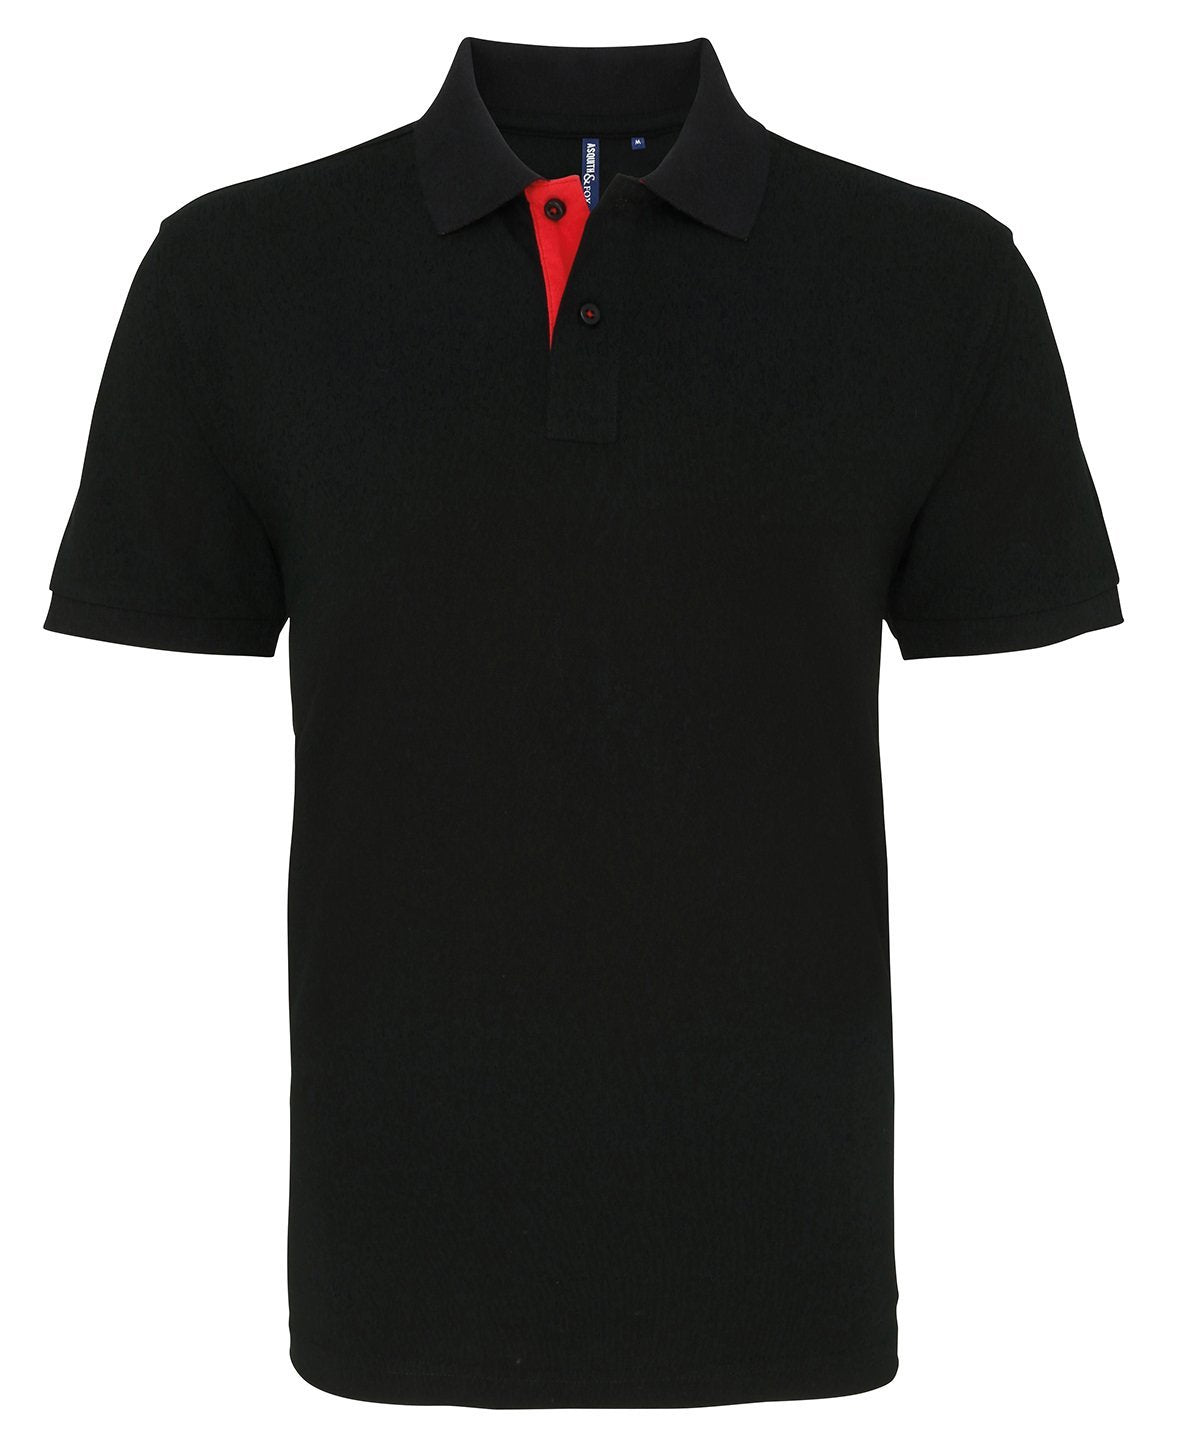 Asquith & Fox Mens Contrast Polo Shirt - Equine Designs